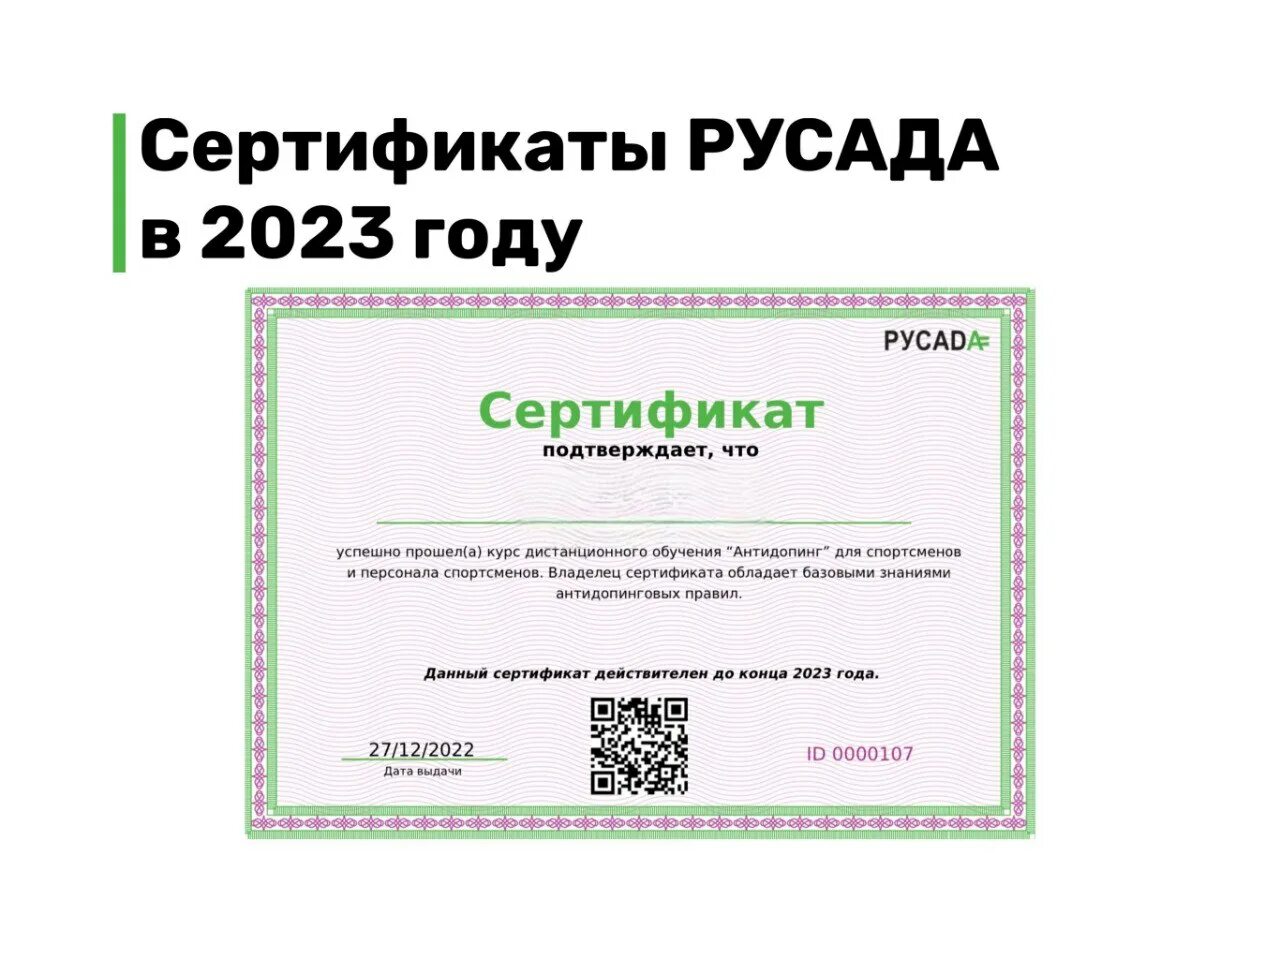 Сертификат РУСАДА 2023. Сертификат РУСАДА антидопинг 2023. Сертификаты 2023 года. Сертификат РУСАДА антидопинг.